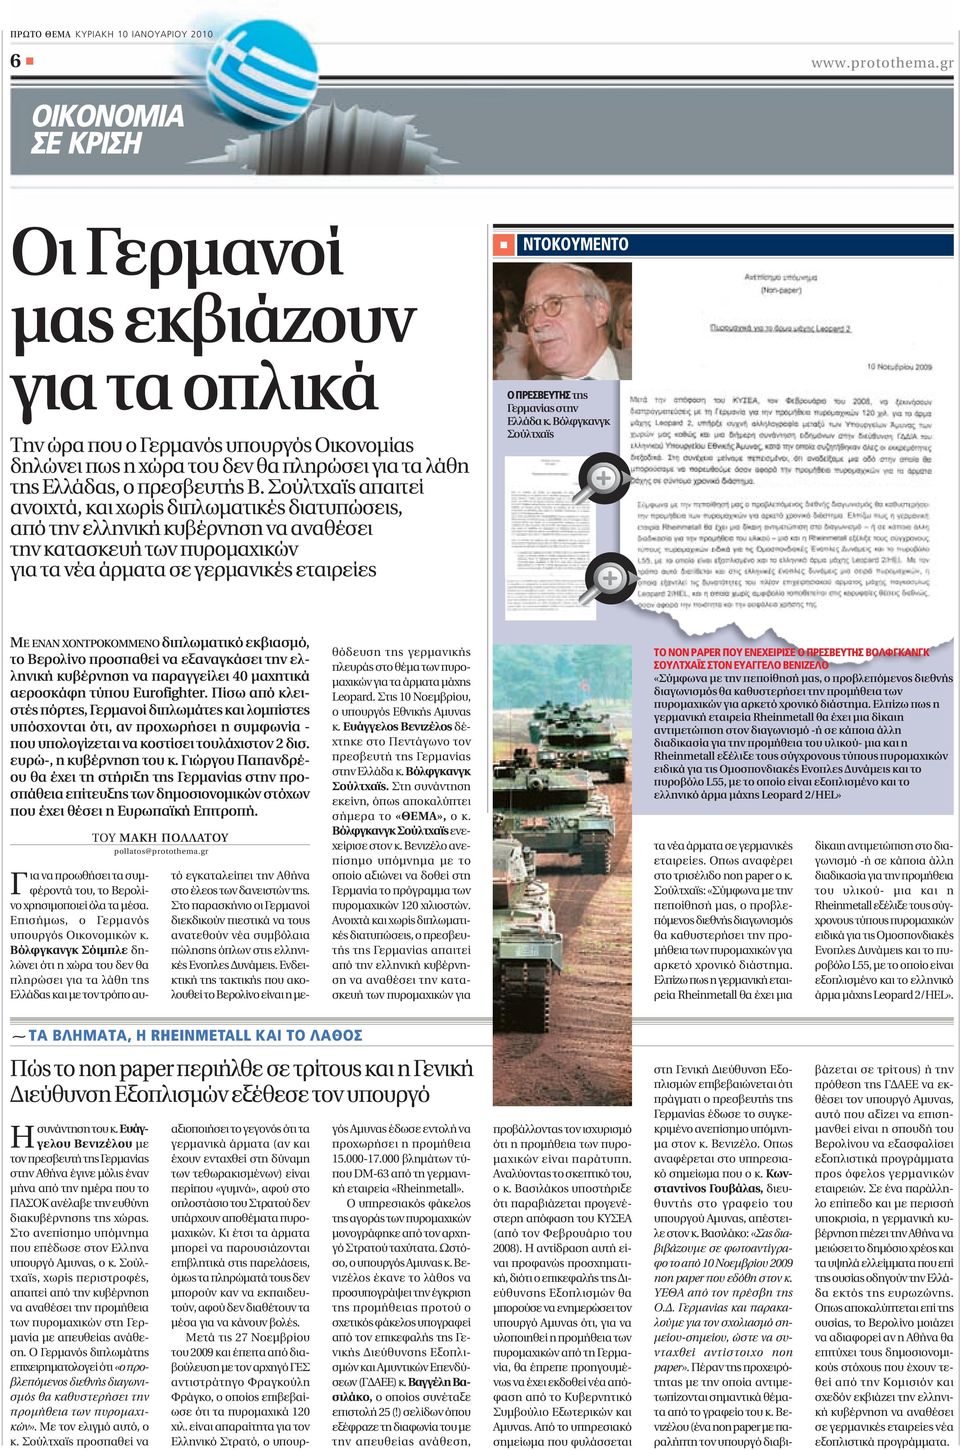 Σούλτχαϊς απαιτεί ανοιχτά, και χωρίς διπλωματικές διατυπώσεις, από την ελληνική κυβέρνηση να αναθέσει την κατασκευή των πυρομαχικών για τα νέα άρματα σε γερμανικές εταιρείες ΝΤΟΚΟΥΜΕΝΤΟ O